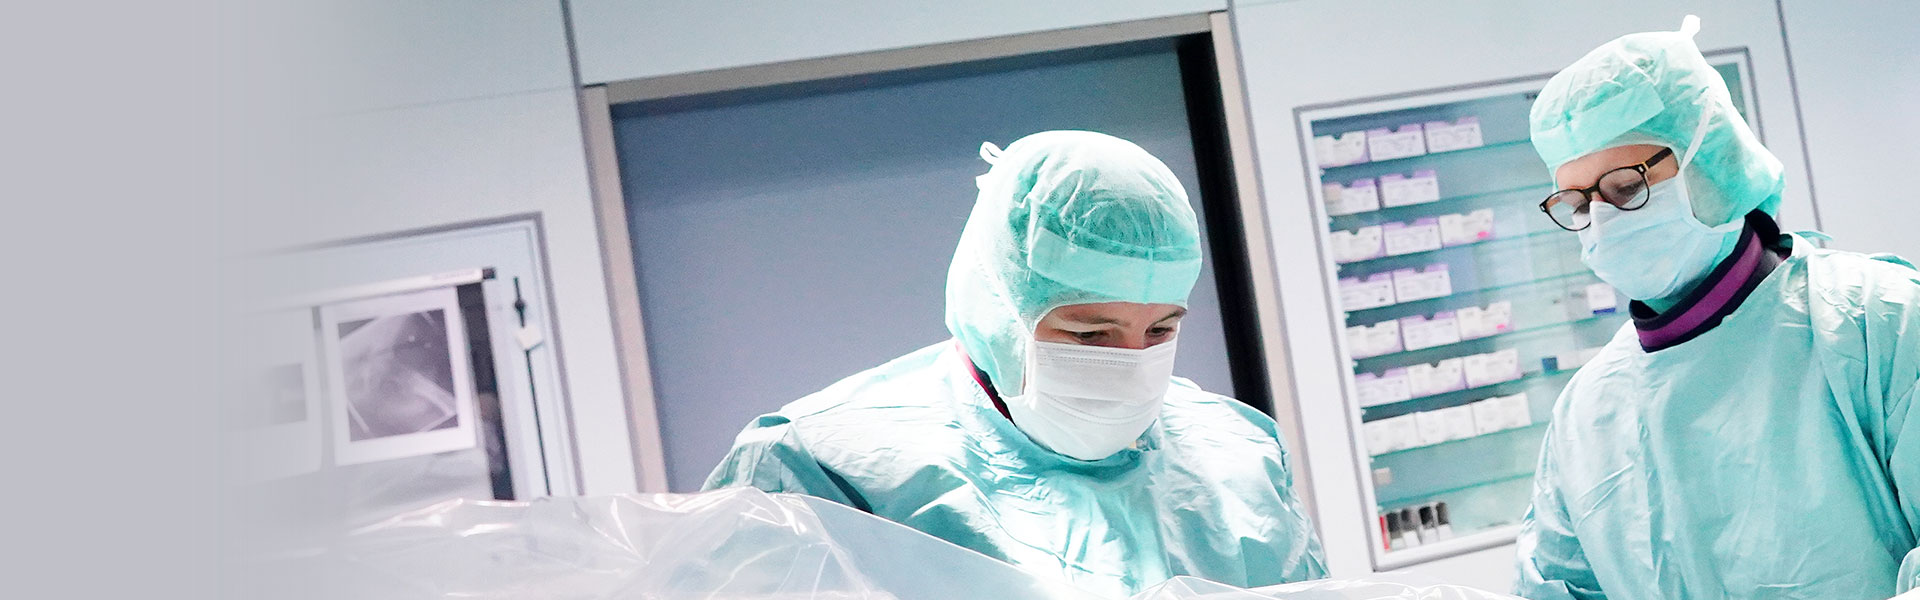 Abbildung: Chirurgie - Dr. Miriam Djobo während einer Operation